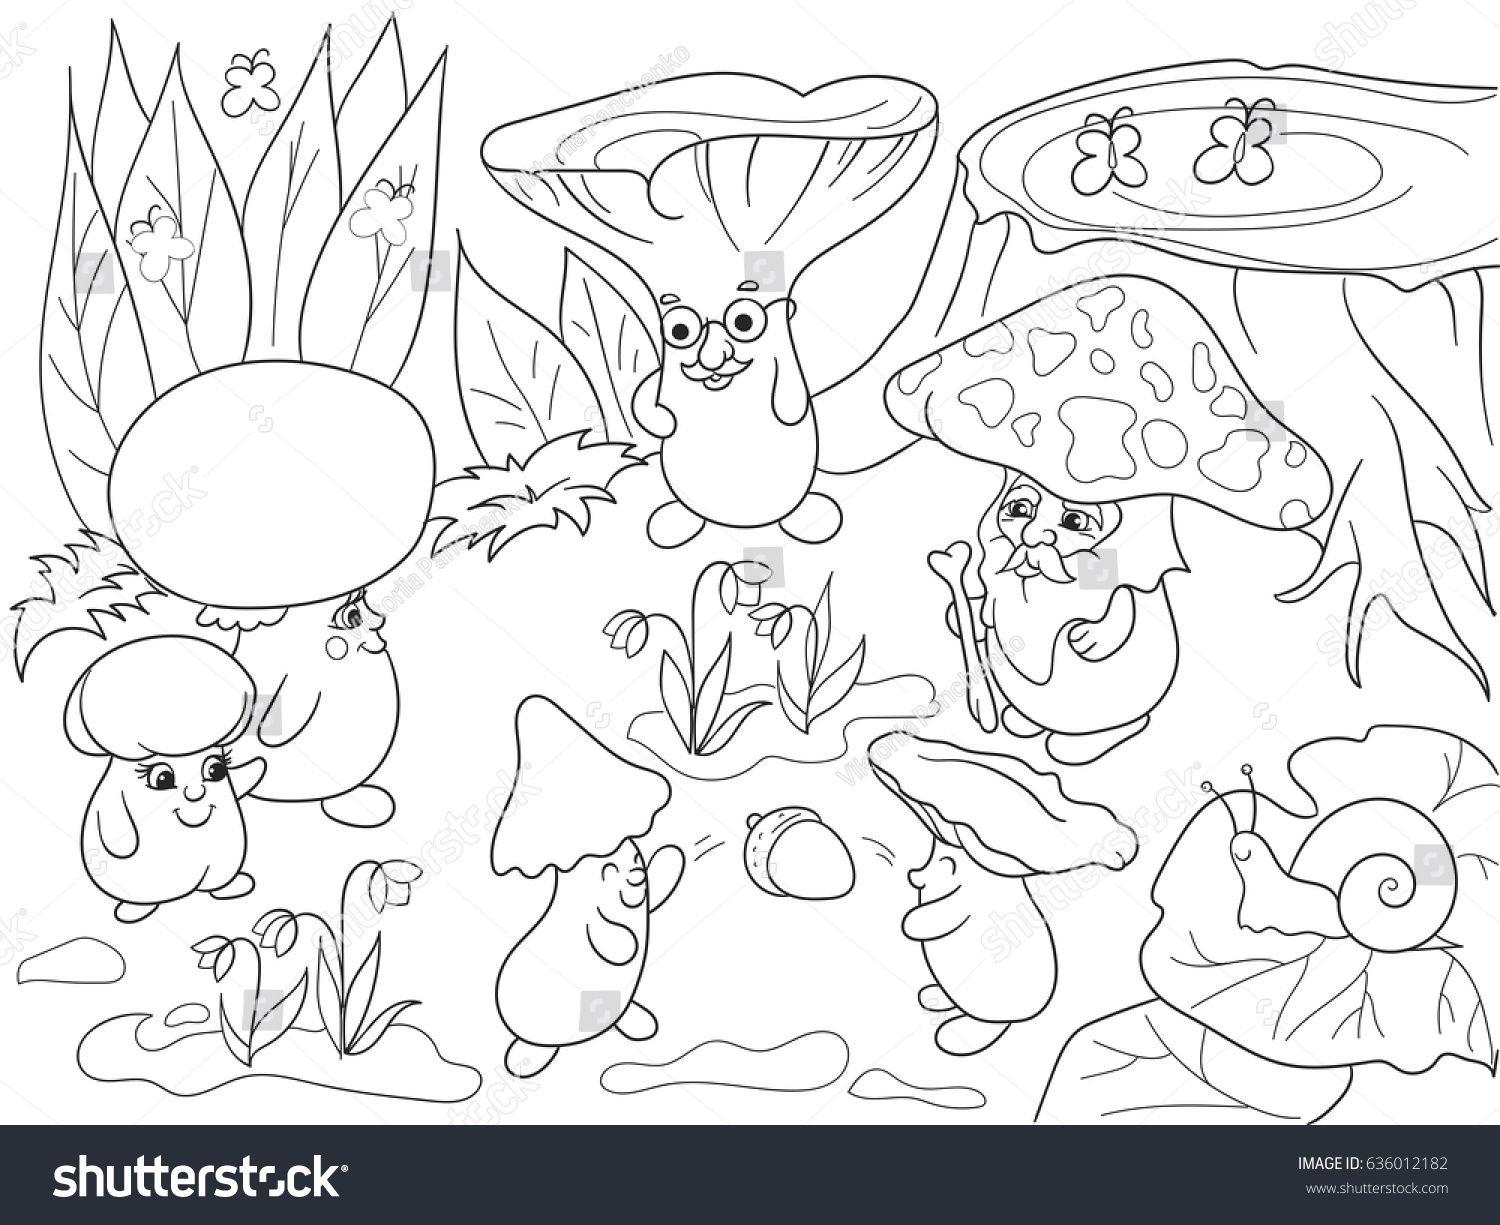 Раскраска Поляна с грибами и ягодами